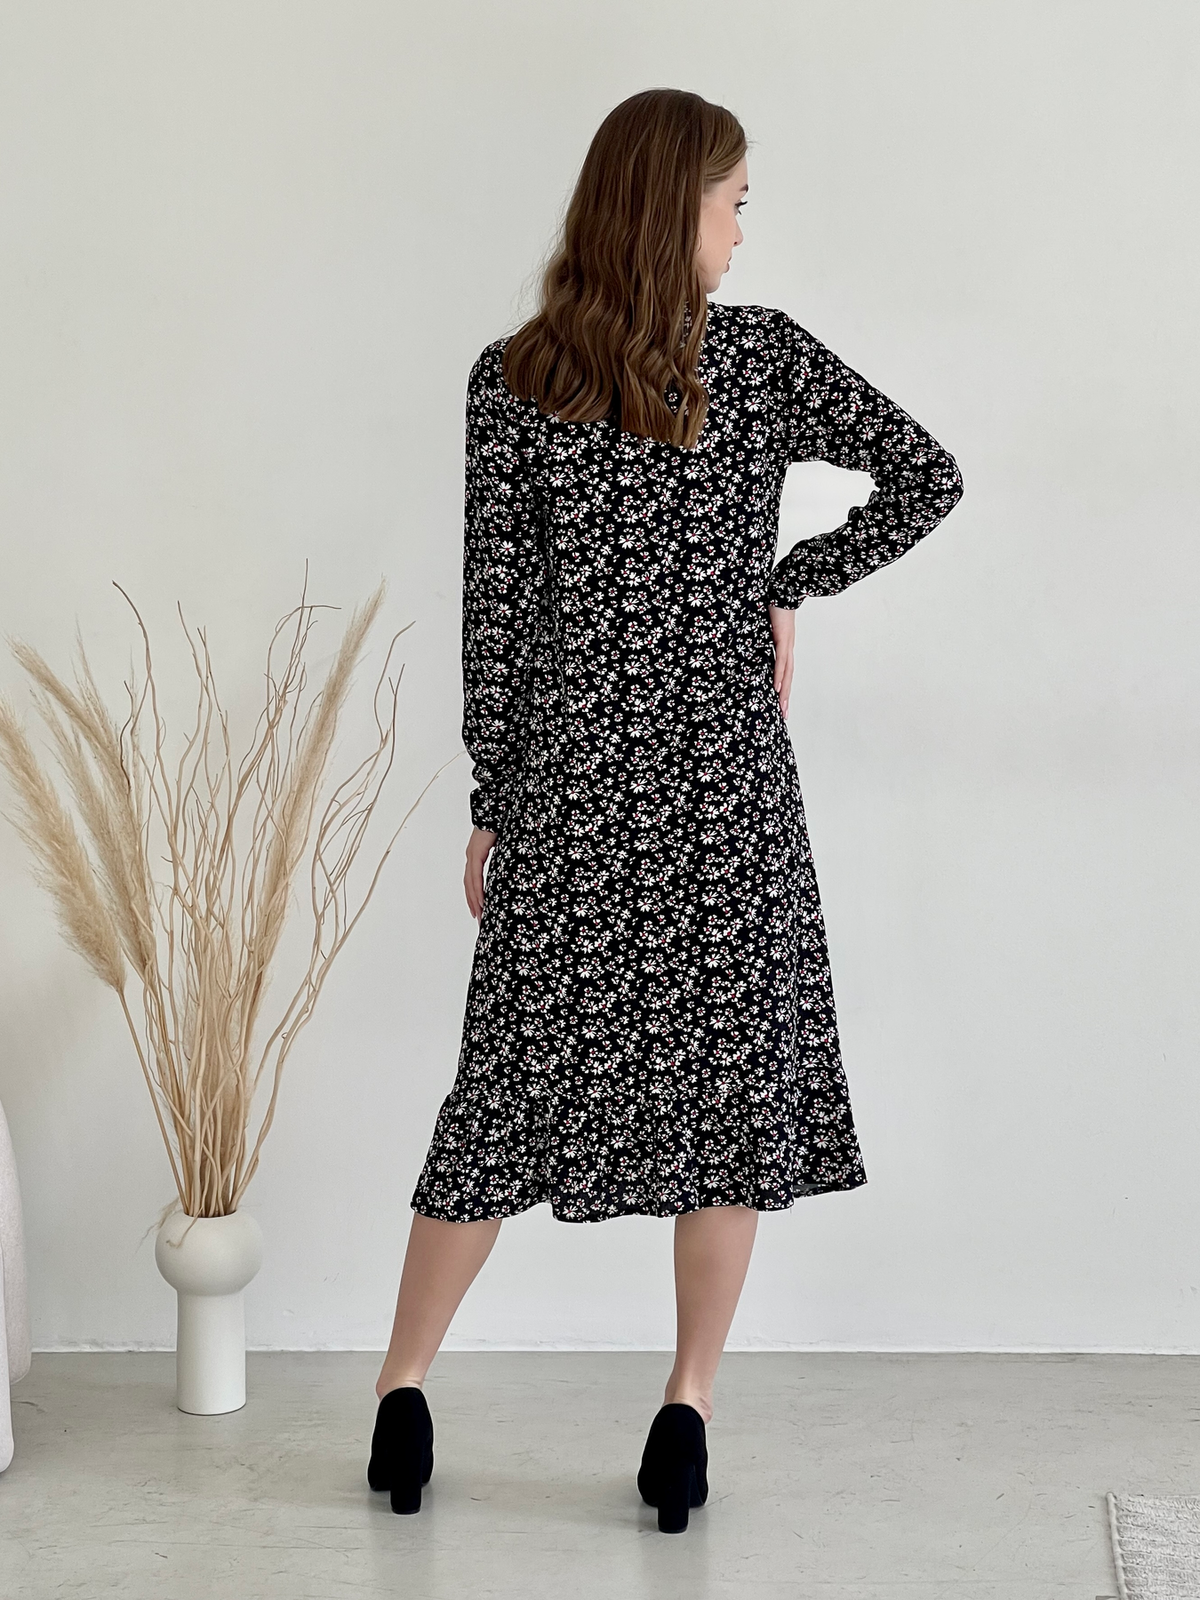 Купить Длинное платье в цветочек черное с длинным рукавом Merlini Фори 700001203, размер 42-44 (S-M) в интернет-магазине